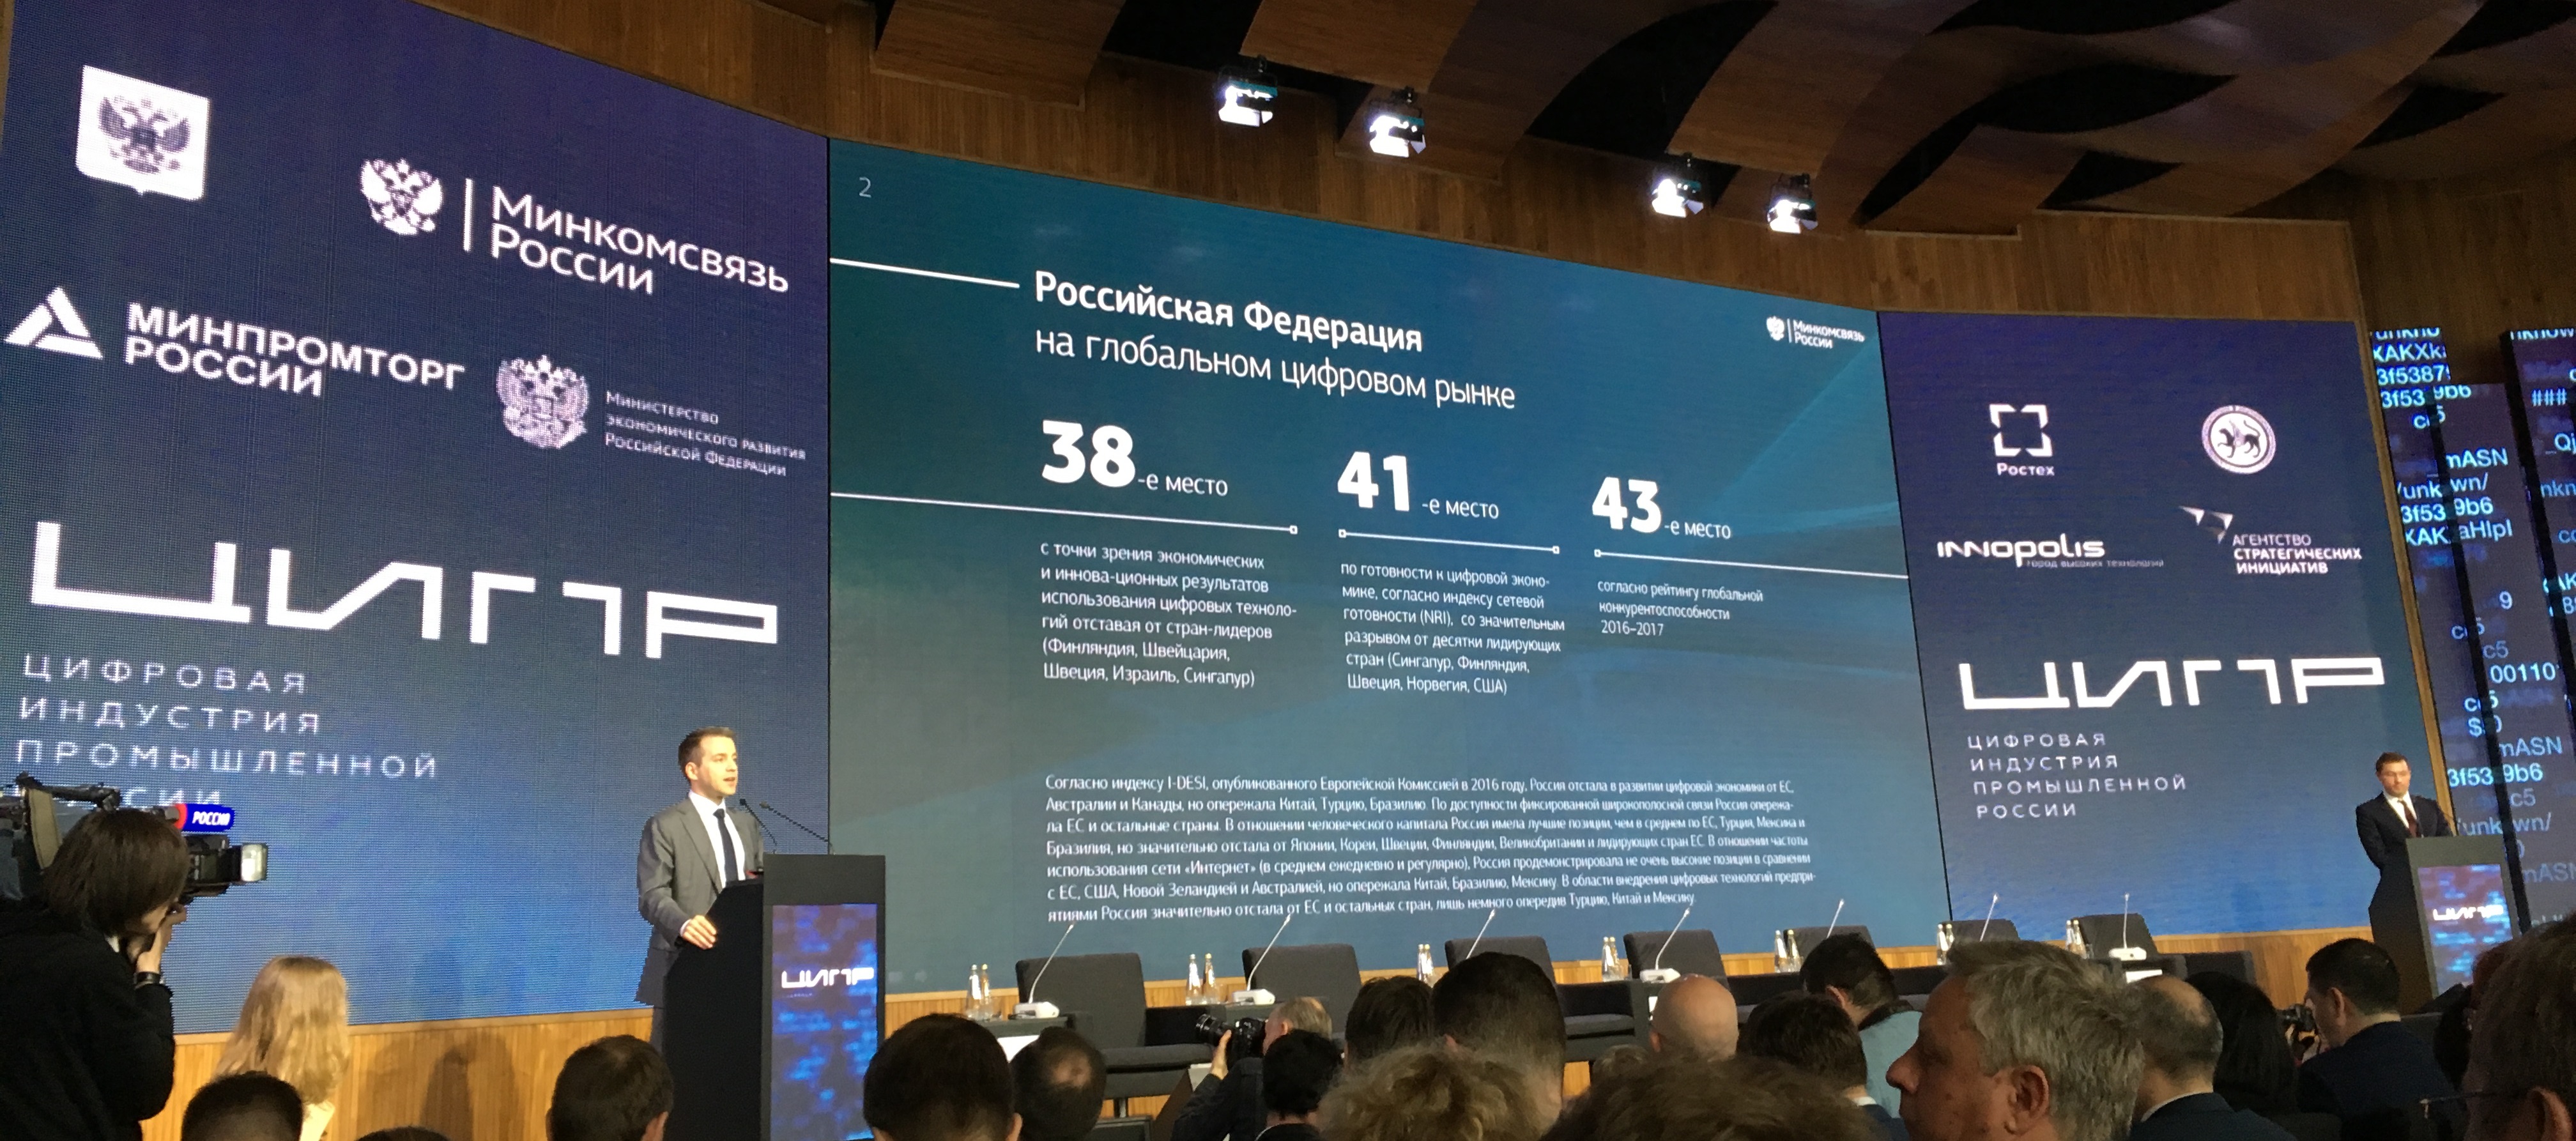 Выступление Никифорова на ЦИПР 2017